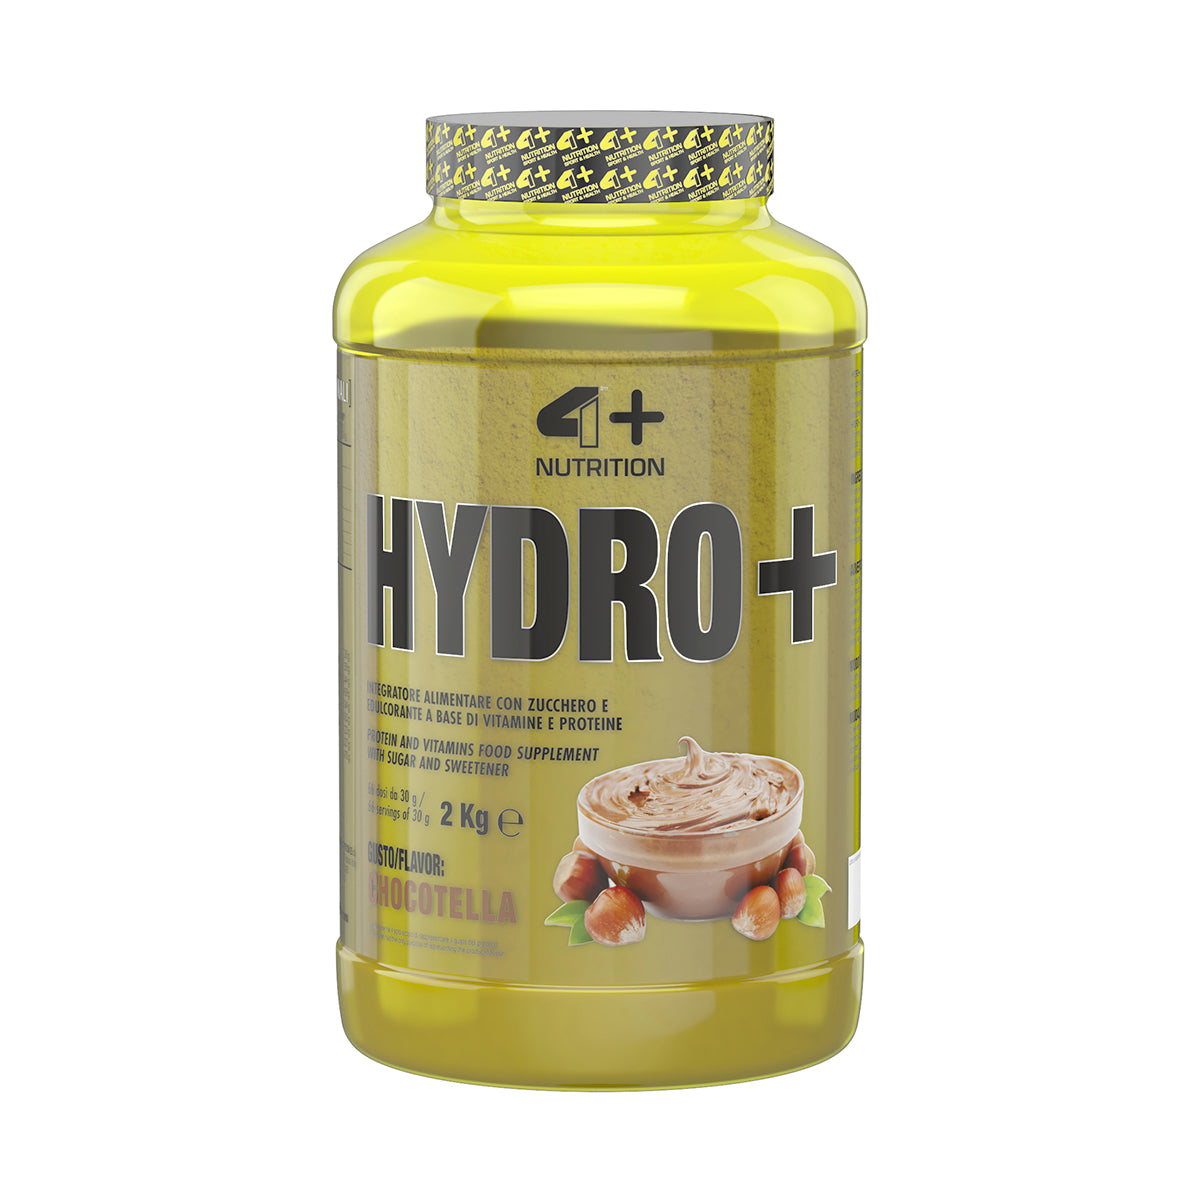 4+ HYDRO + Nutrition